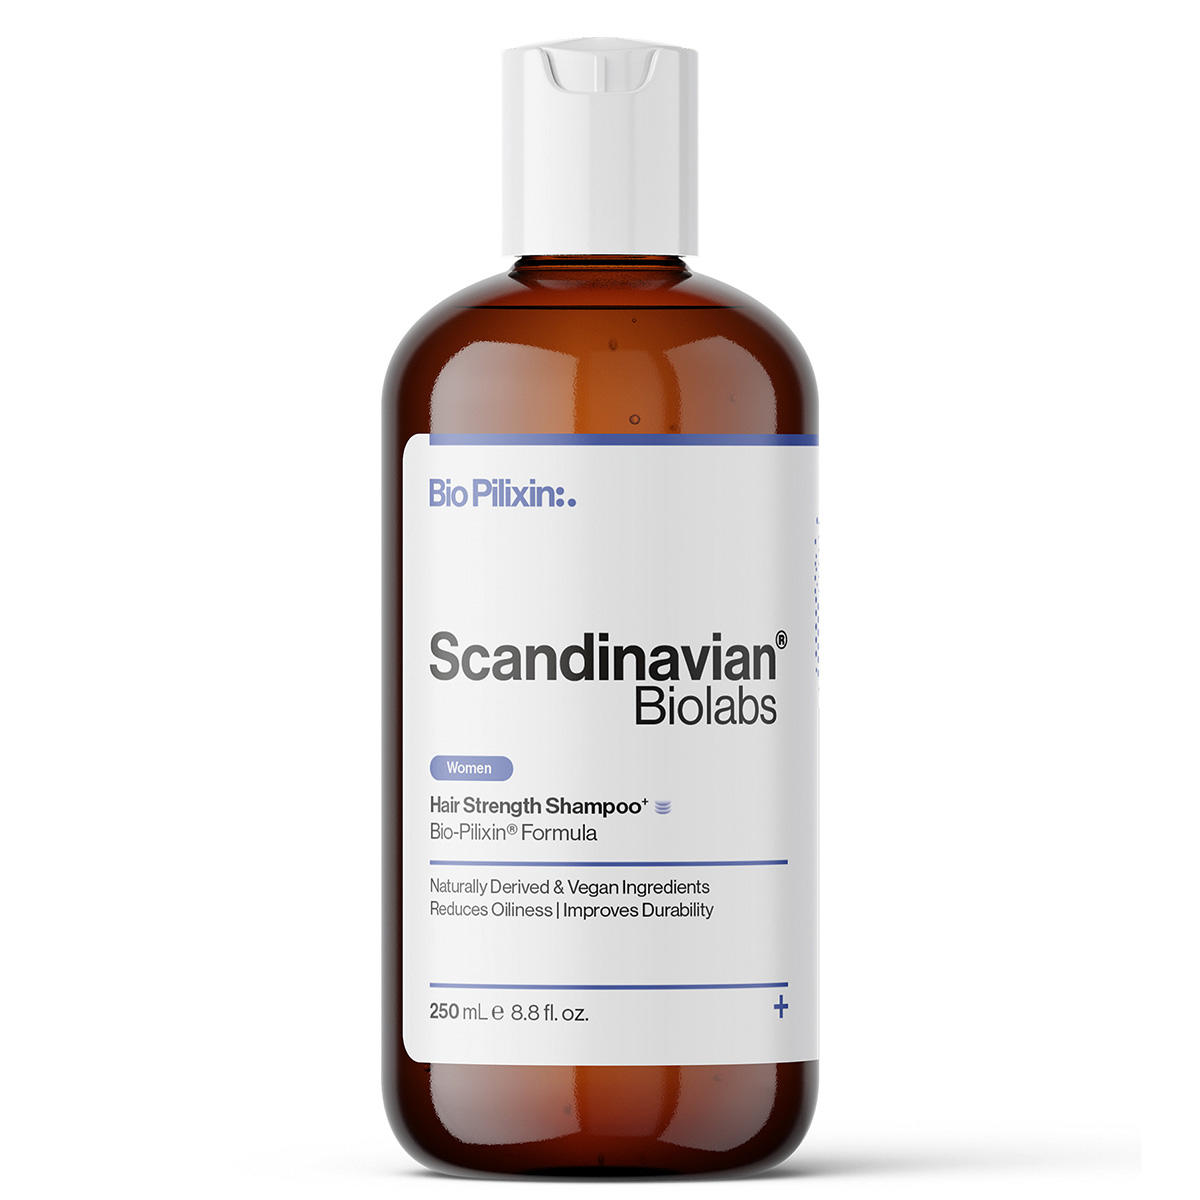 Scandinavian Biolabs Bio-Pilixin® Shampoo+ | For women 250 ml - 1